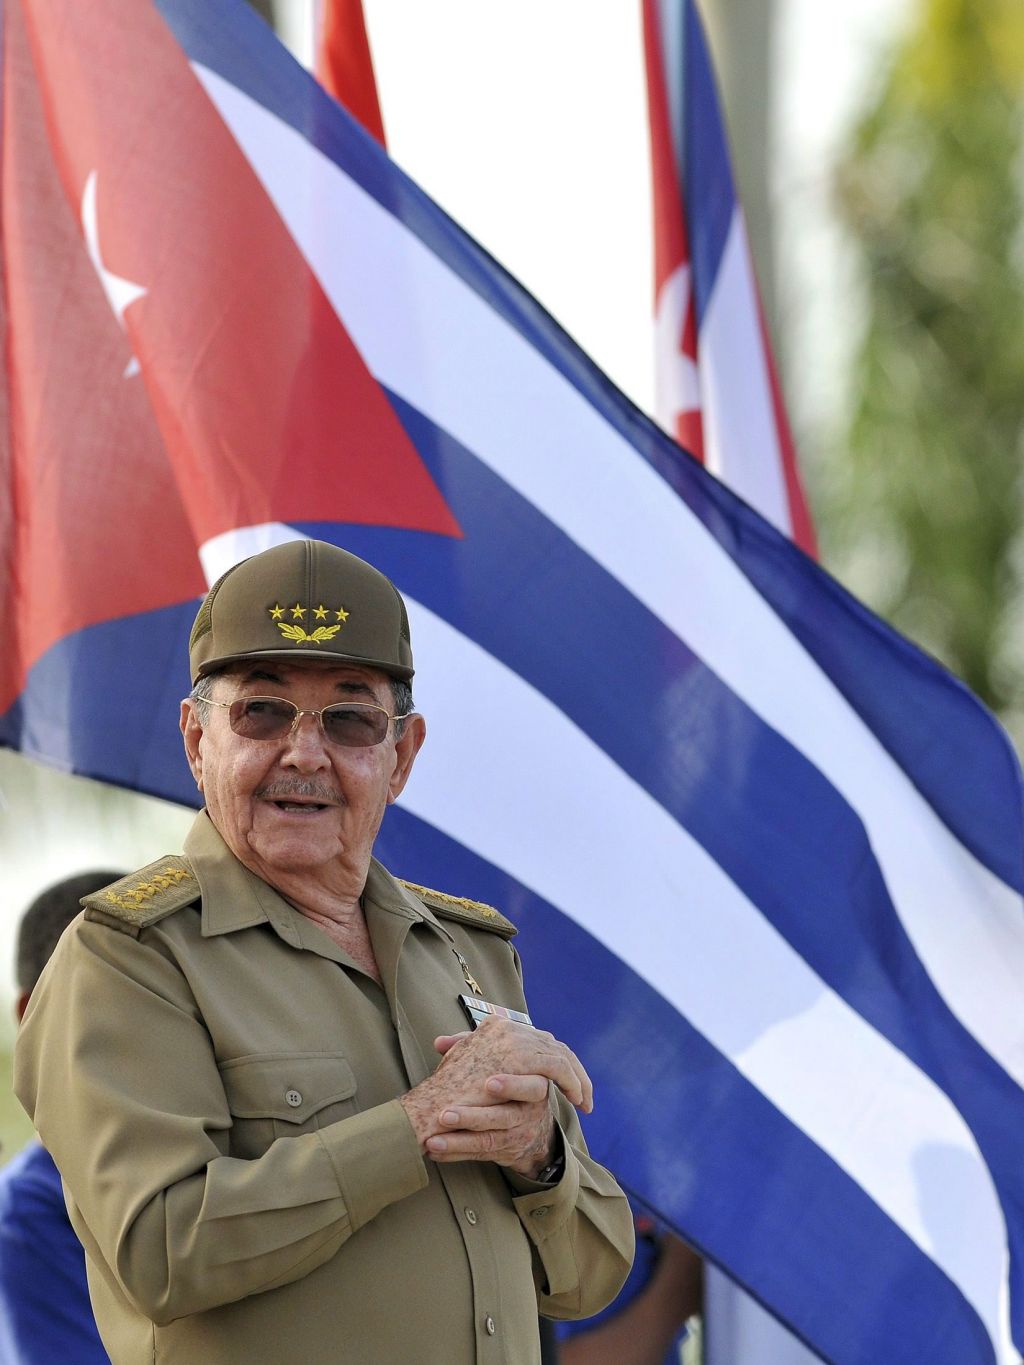 Odnosi med Kubo in ZDA se segrevajo